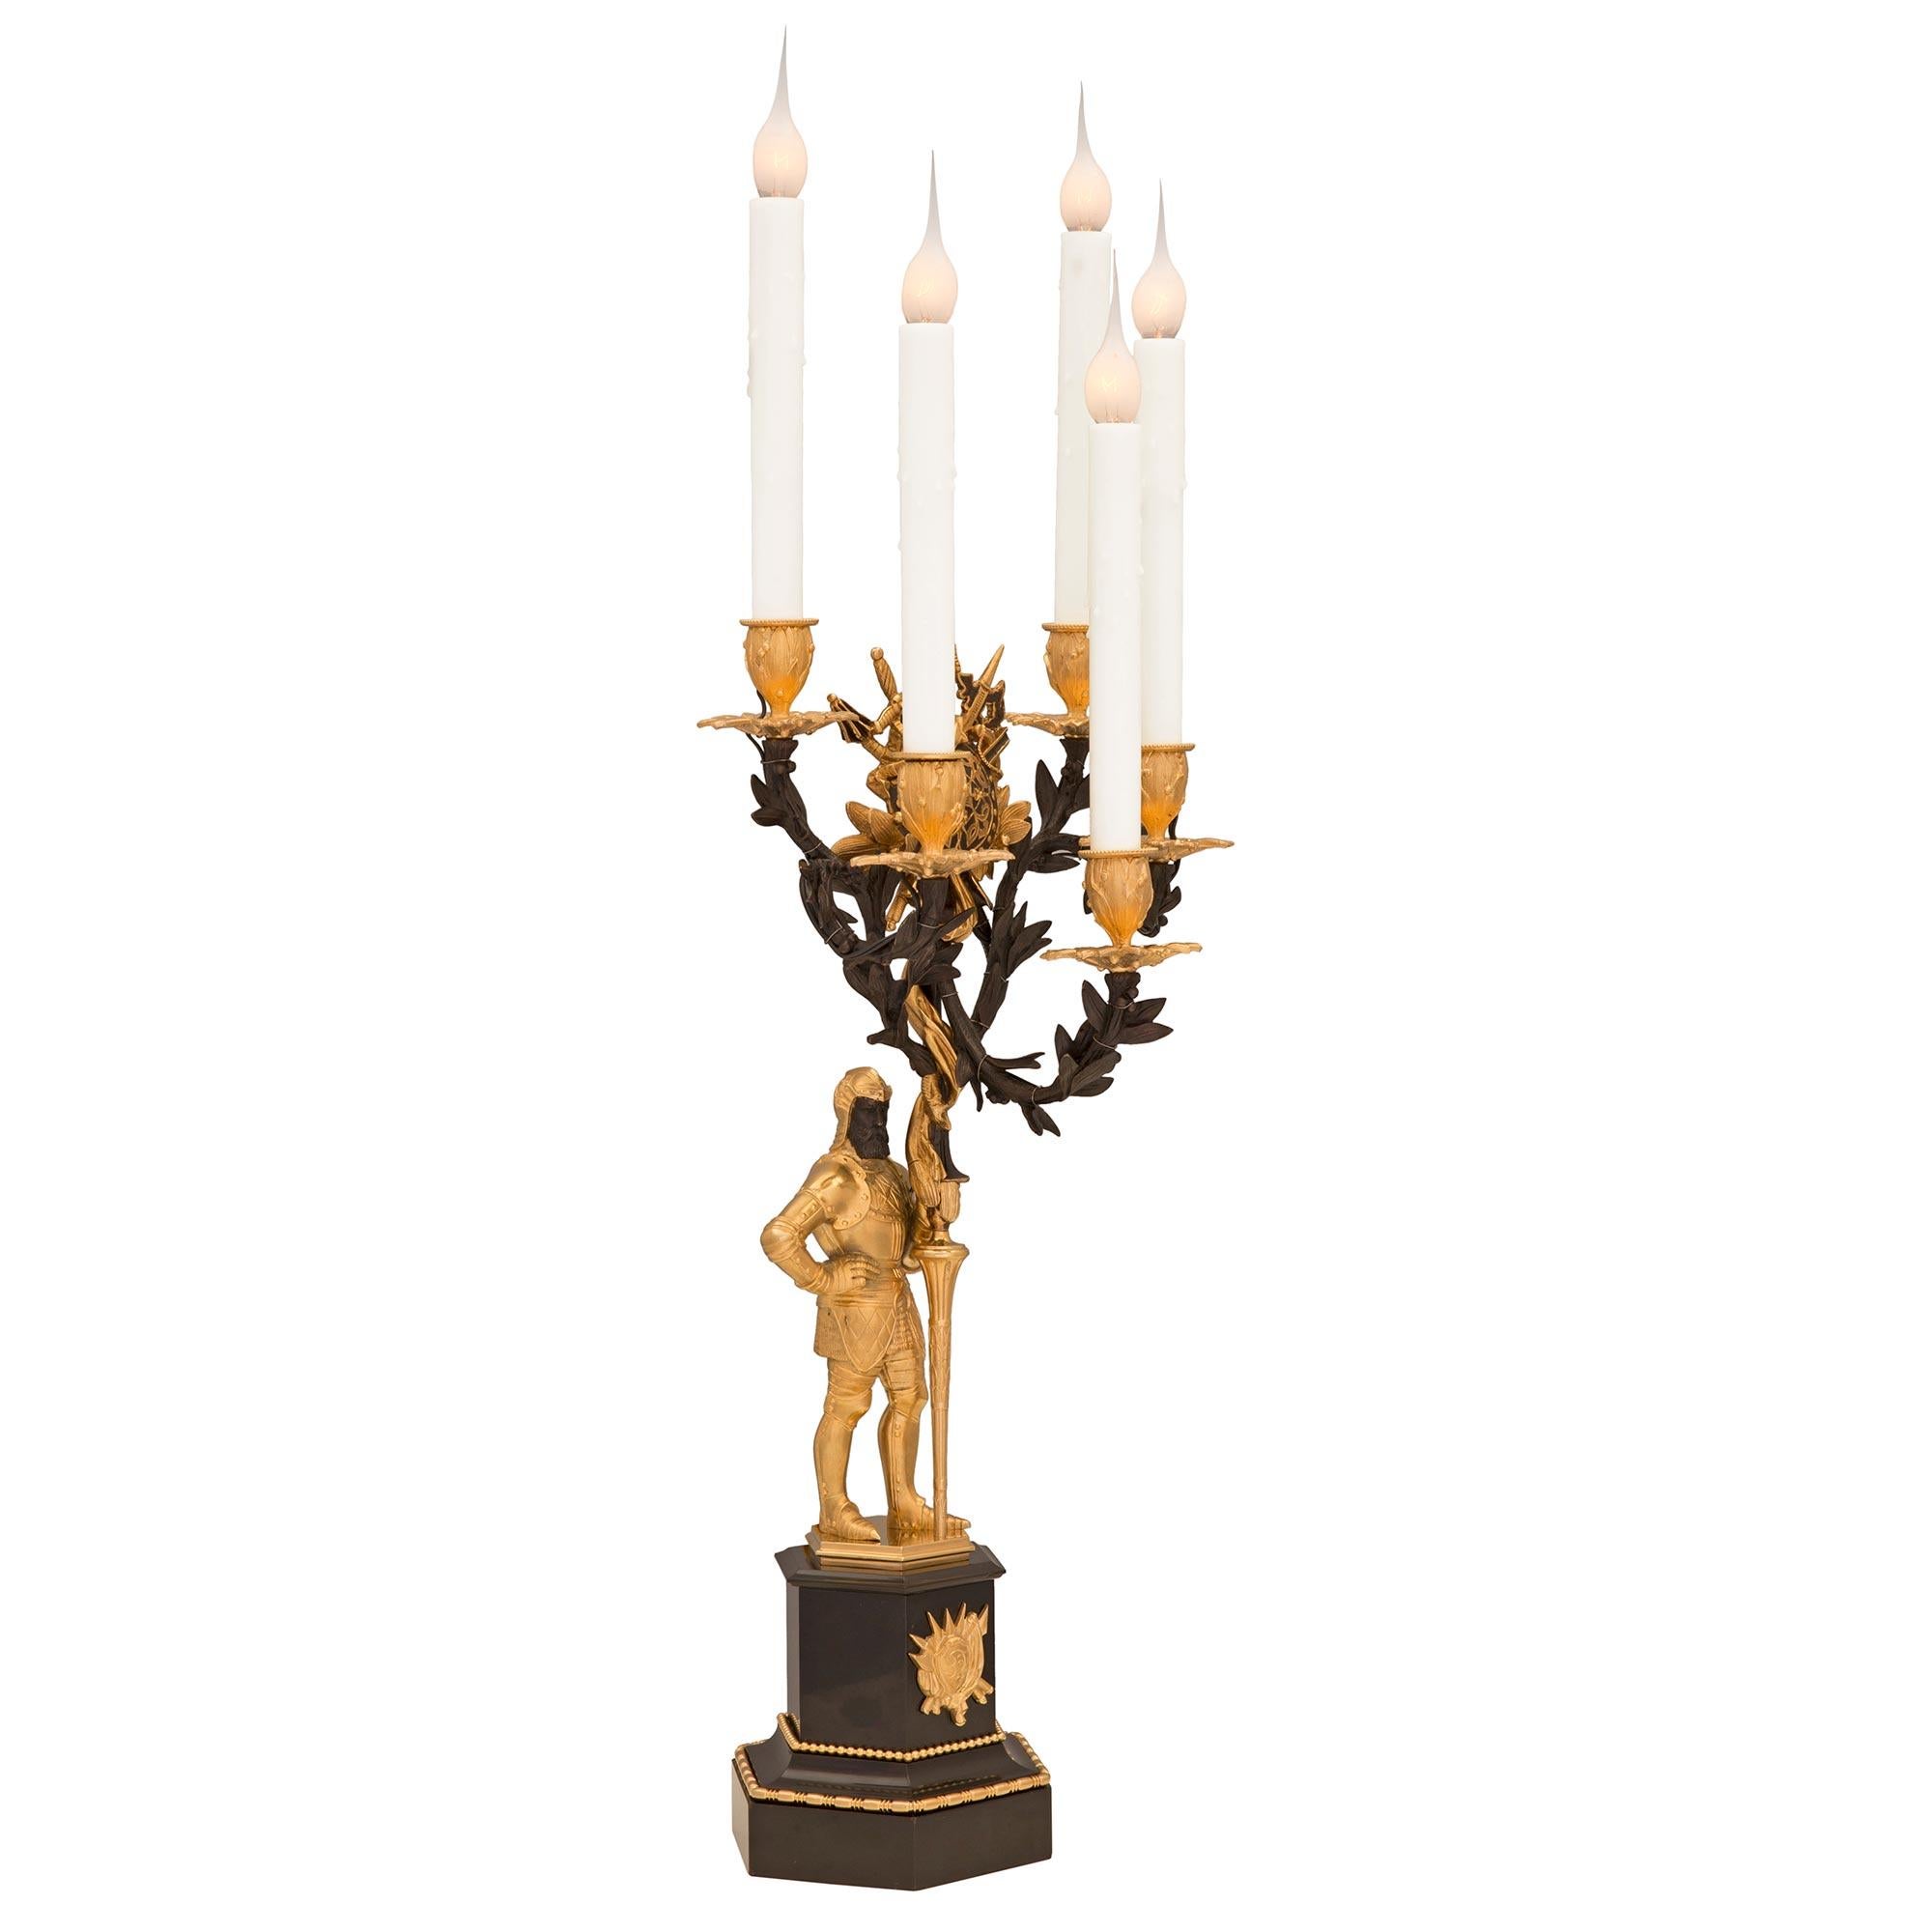 Une paire impressionnante et de grande qualité de lampes candélabres en bronze patiné, bronze doré et marbre noir de Belgique, datant du 19ème siècle. Chaque lampe à cinq bras est surélevée par une base hexagonale très décorative en marbre noir